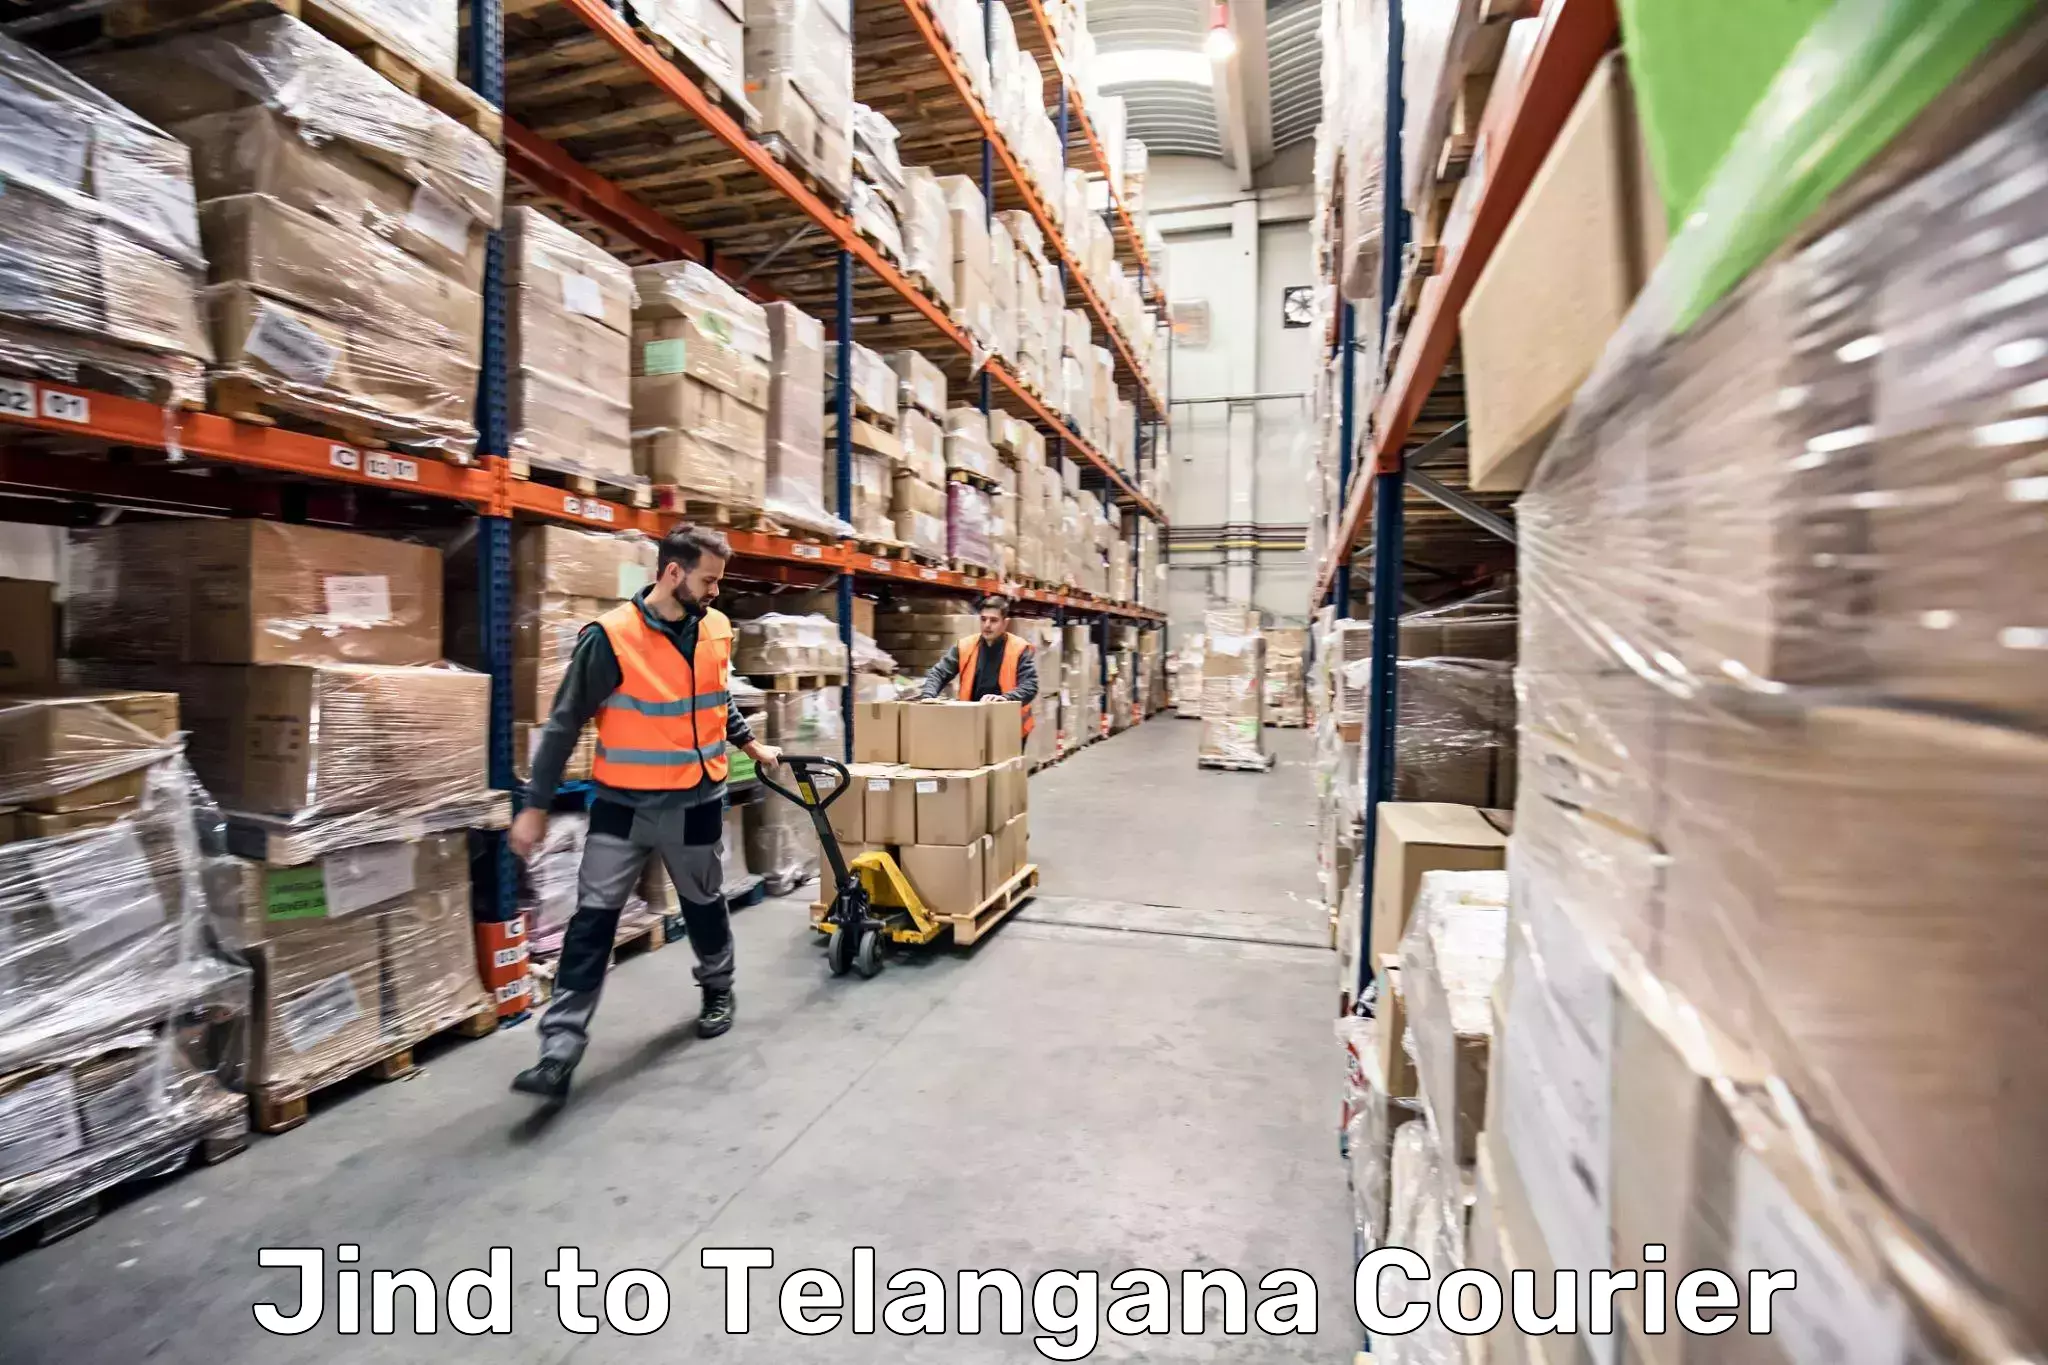 Baggage handling services Jind to Telangana